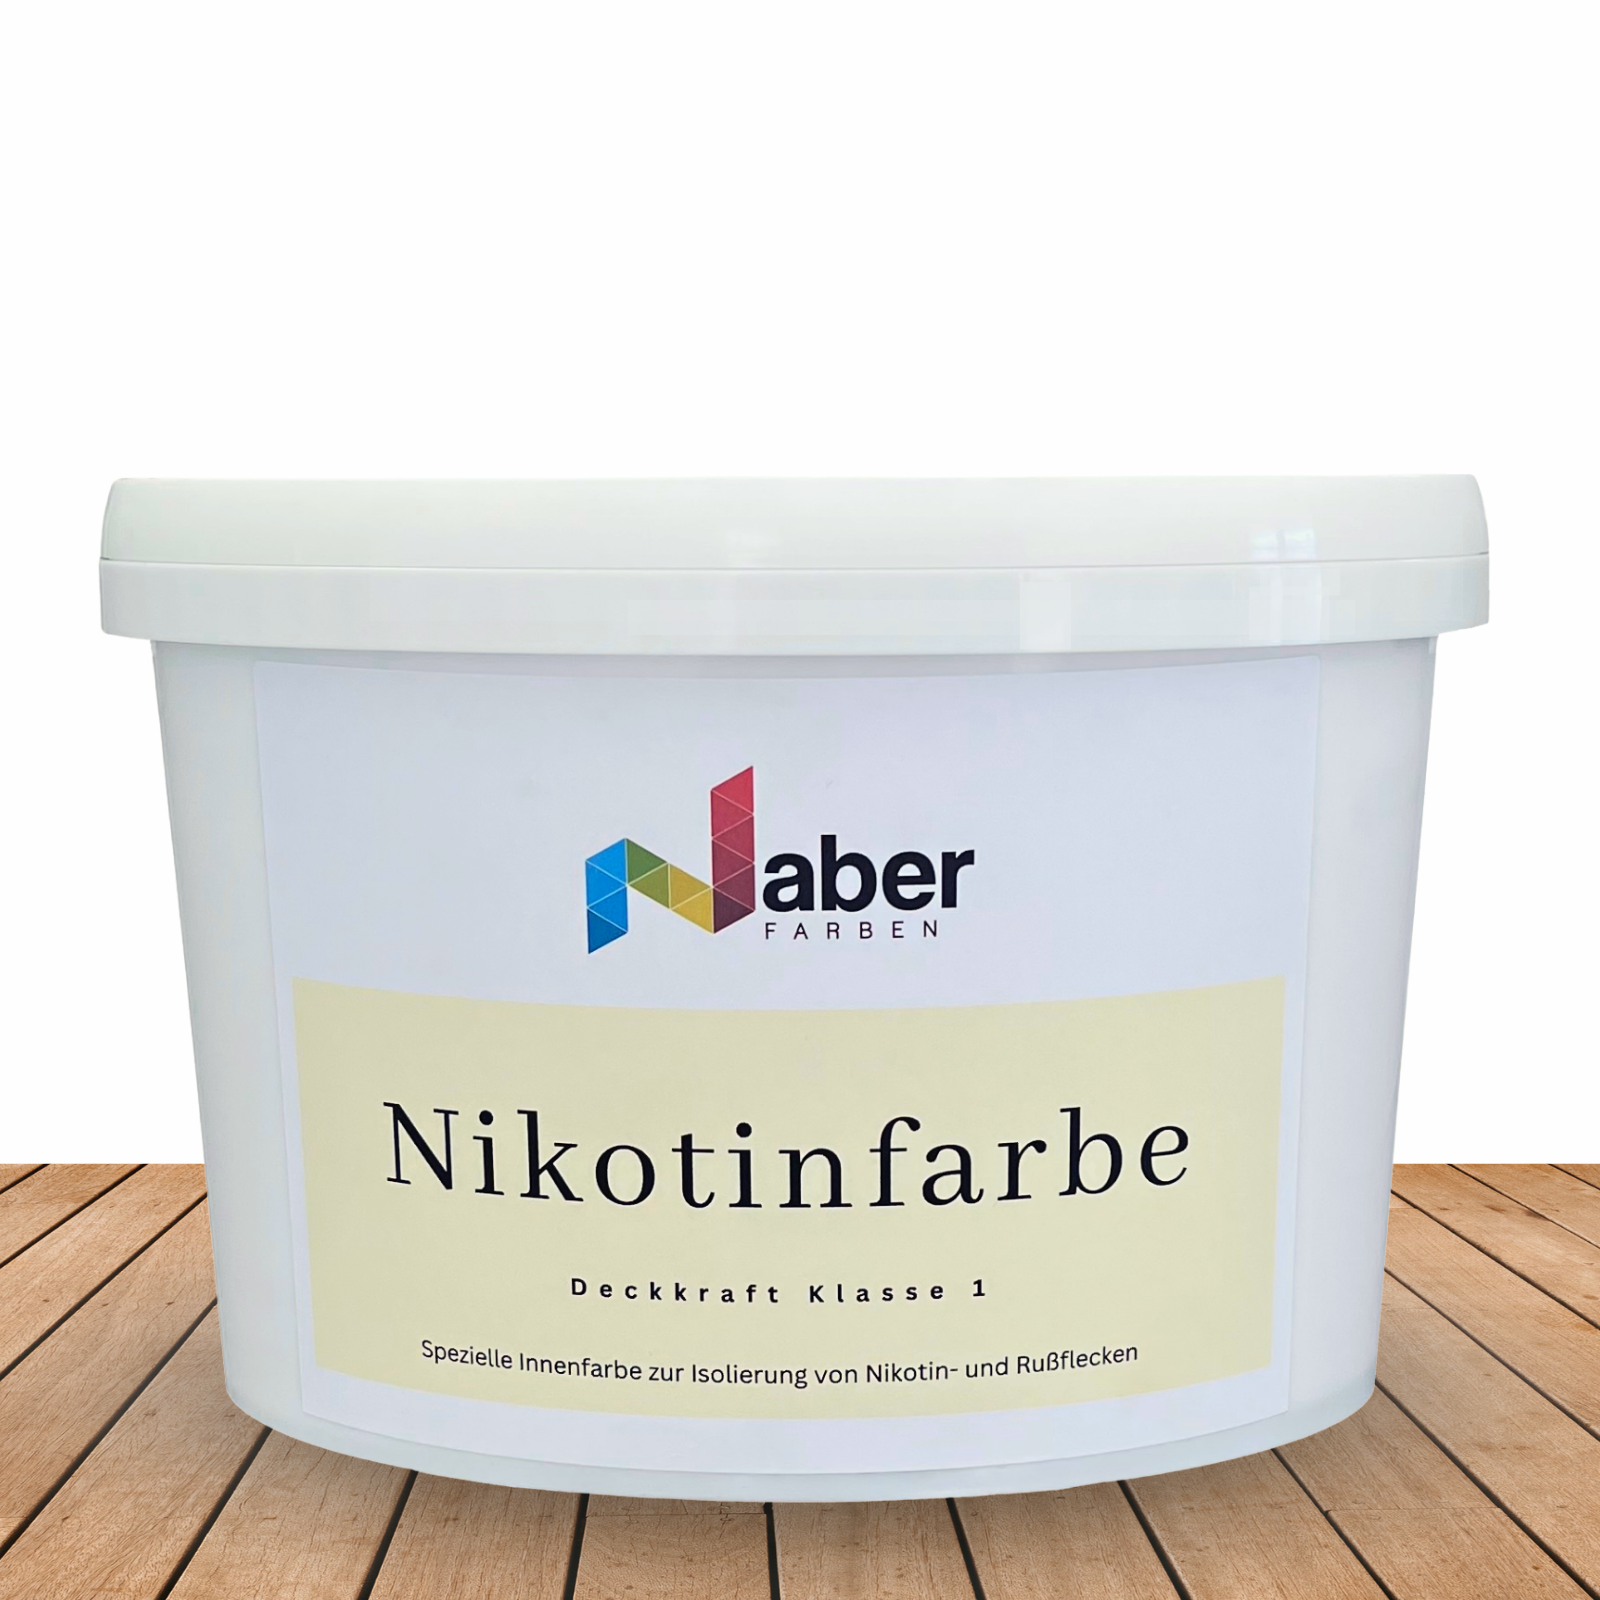 http://naber-farben.de/cdn/shop/products/nikotin_cee0f743-46f2-4b11-846d-0695cafca0ff.png?v=1676016390